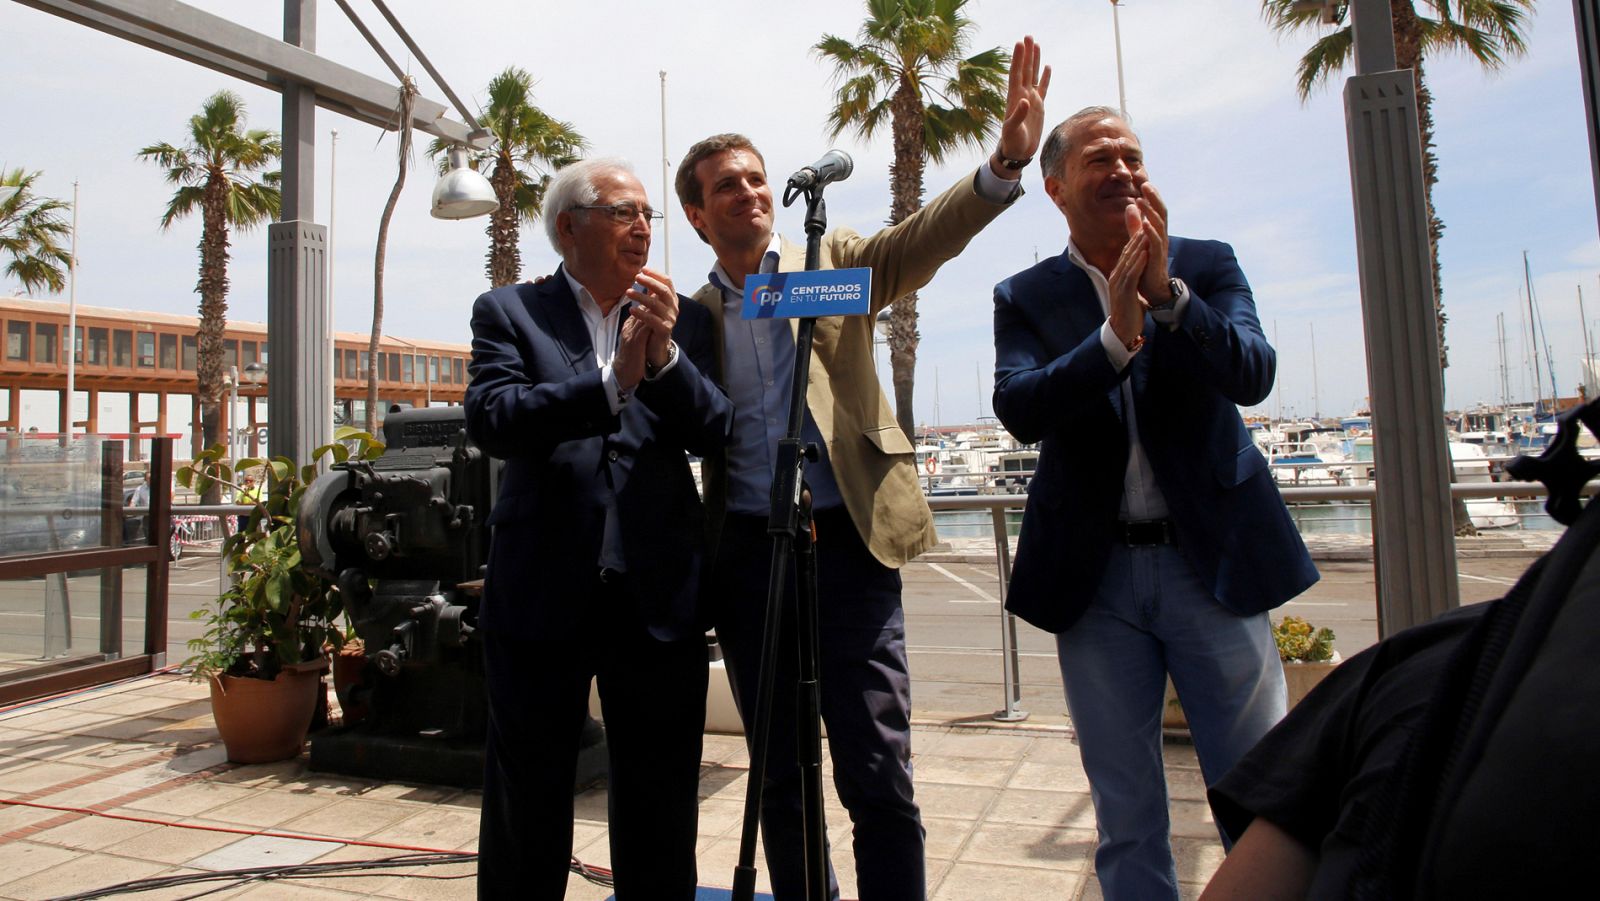 En Melilla, el PP se juega el gobierno en las elecciones autonómicas y municipales del 26 de mayo. Teniendo en cuenta el resultado de las generales, su mayoría absoluta peligra. Juan José Imbroda lleva en el poder desde el 2000 cuando se hizo con la presidencia tras una moción de censura.